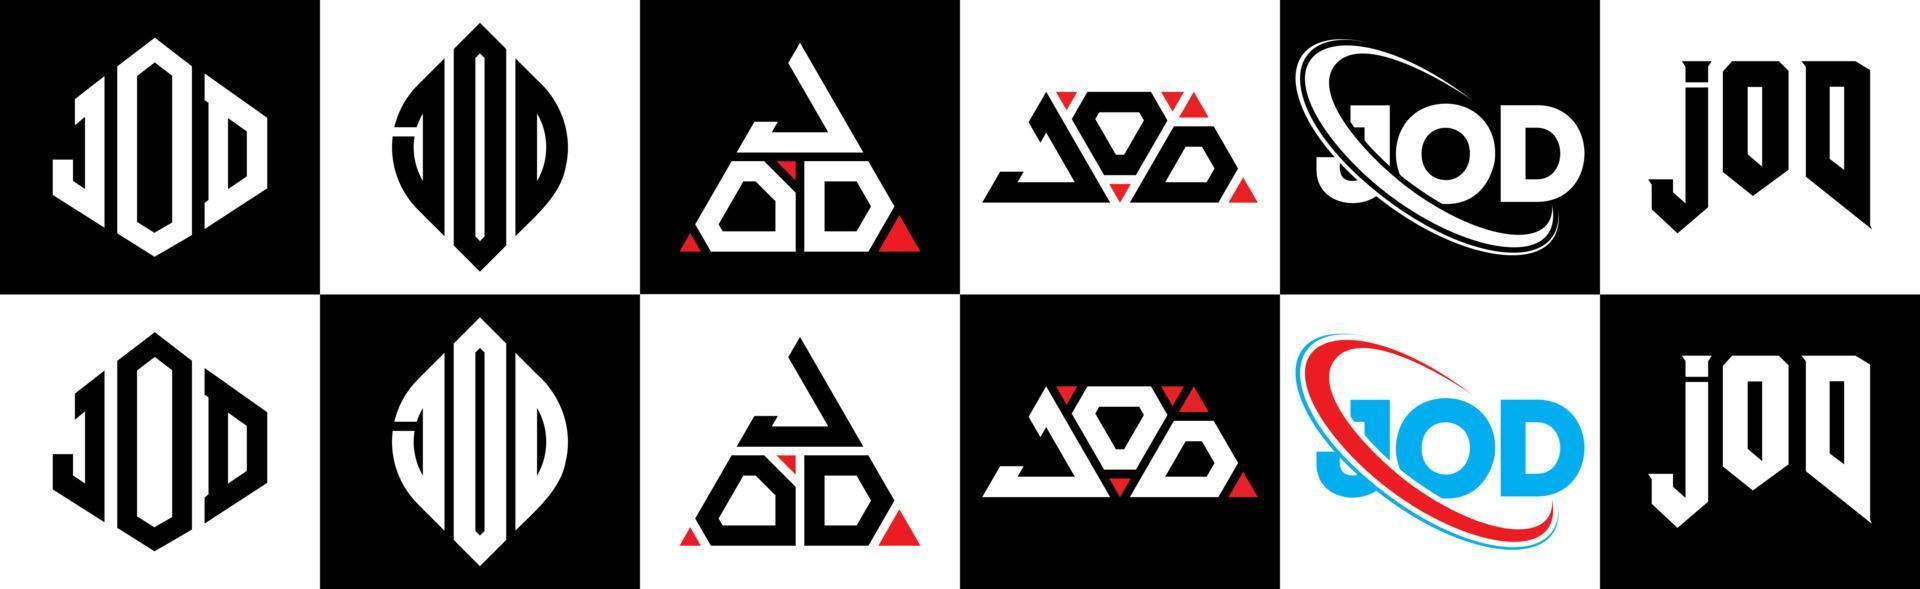 Jod-Buchstaben-Logo-Design in sechs Stilen. Jod-Polygon, Kreis, Dreieck, Sechseck, flacher und einfacher Stil mit schwarz-weißem Buchstabenlogo in einer Zeichenfläche. Jod minimalistisches und klassisches Logo vektor